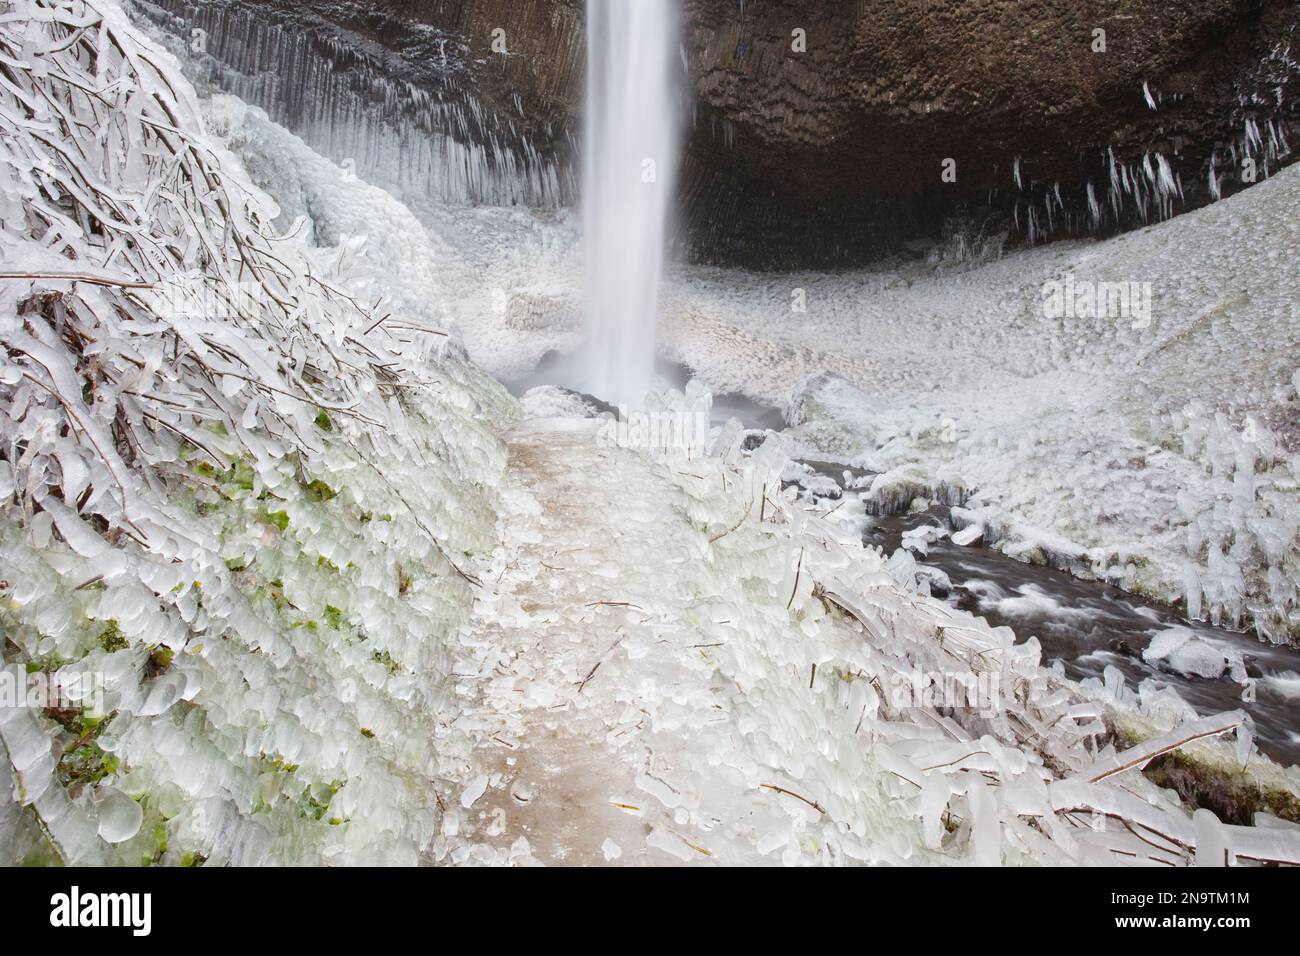 Nahaufnahme des Wintereises nach einem Sturm entlang der Latourell Falls, Columbia River Gorge National Scenic Area, Oregon, USA; Oregon, Vereinigte Staaten von Amerika Stockfoto